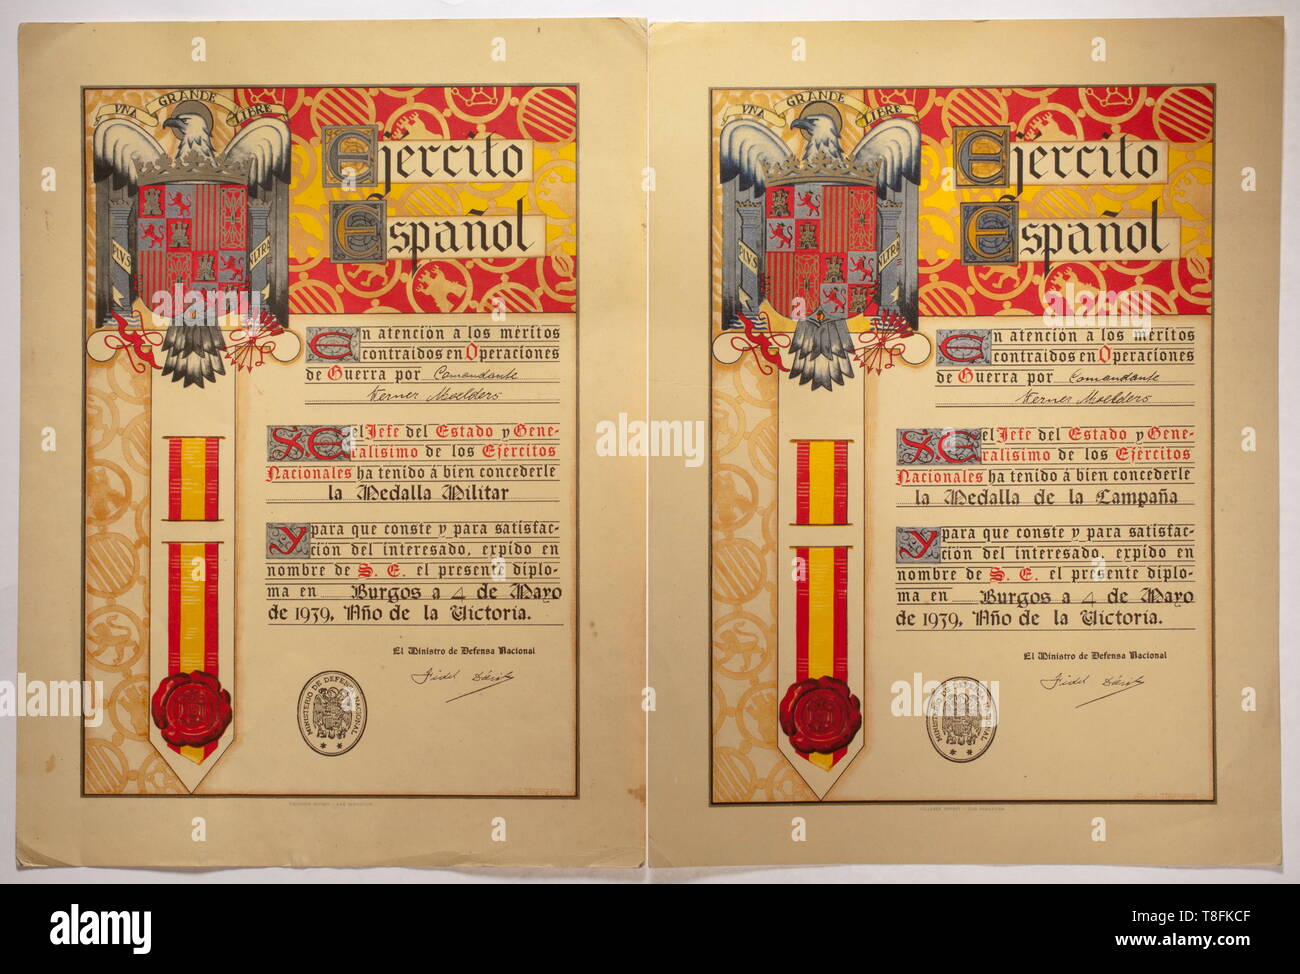 Oberst Werner Mölders - eine Auszeichnung für die spanische Medalla Militar und Medalla de la Campana Große polychrome gedruckt dekorative Dokument der Firma "TALLERES OFFSET - SAN SEBASTIAN ausgestellt", "Comandante Werner Moelders" im Jahr der Sieg, den 4. Mai 1939, und unterzeichnet (Stempel) der Minister für Verteidigung und Generalleutnant Fidel Dávila Arrondo. Nach Angaben der spanischen Bestellungen Statuten von 1938, die Medalla Militar war der dritte höchste Auszeichnung des Landes und eine hoch angesehene Auszeichnung für Tapferkeit, die in Spanien, ähnlich wie das Victoria Cross, war in erster Linie, Editorial-Use - Nur vergeben Stockfoto